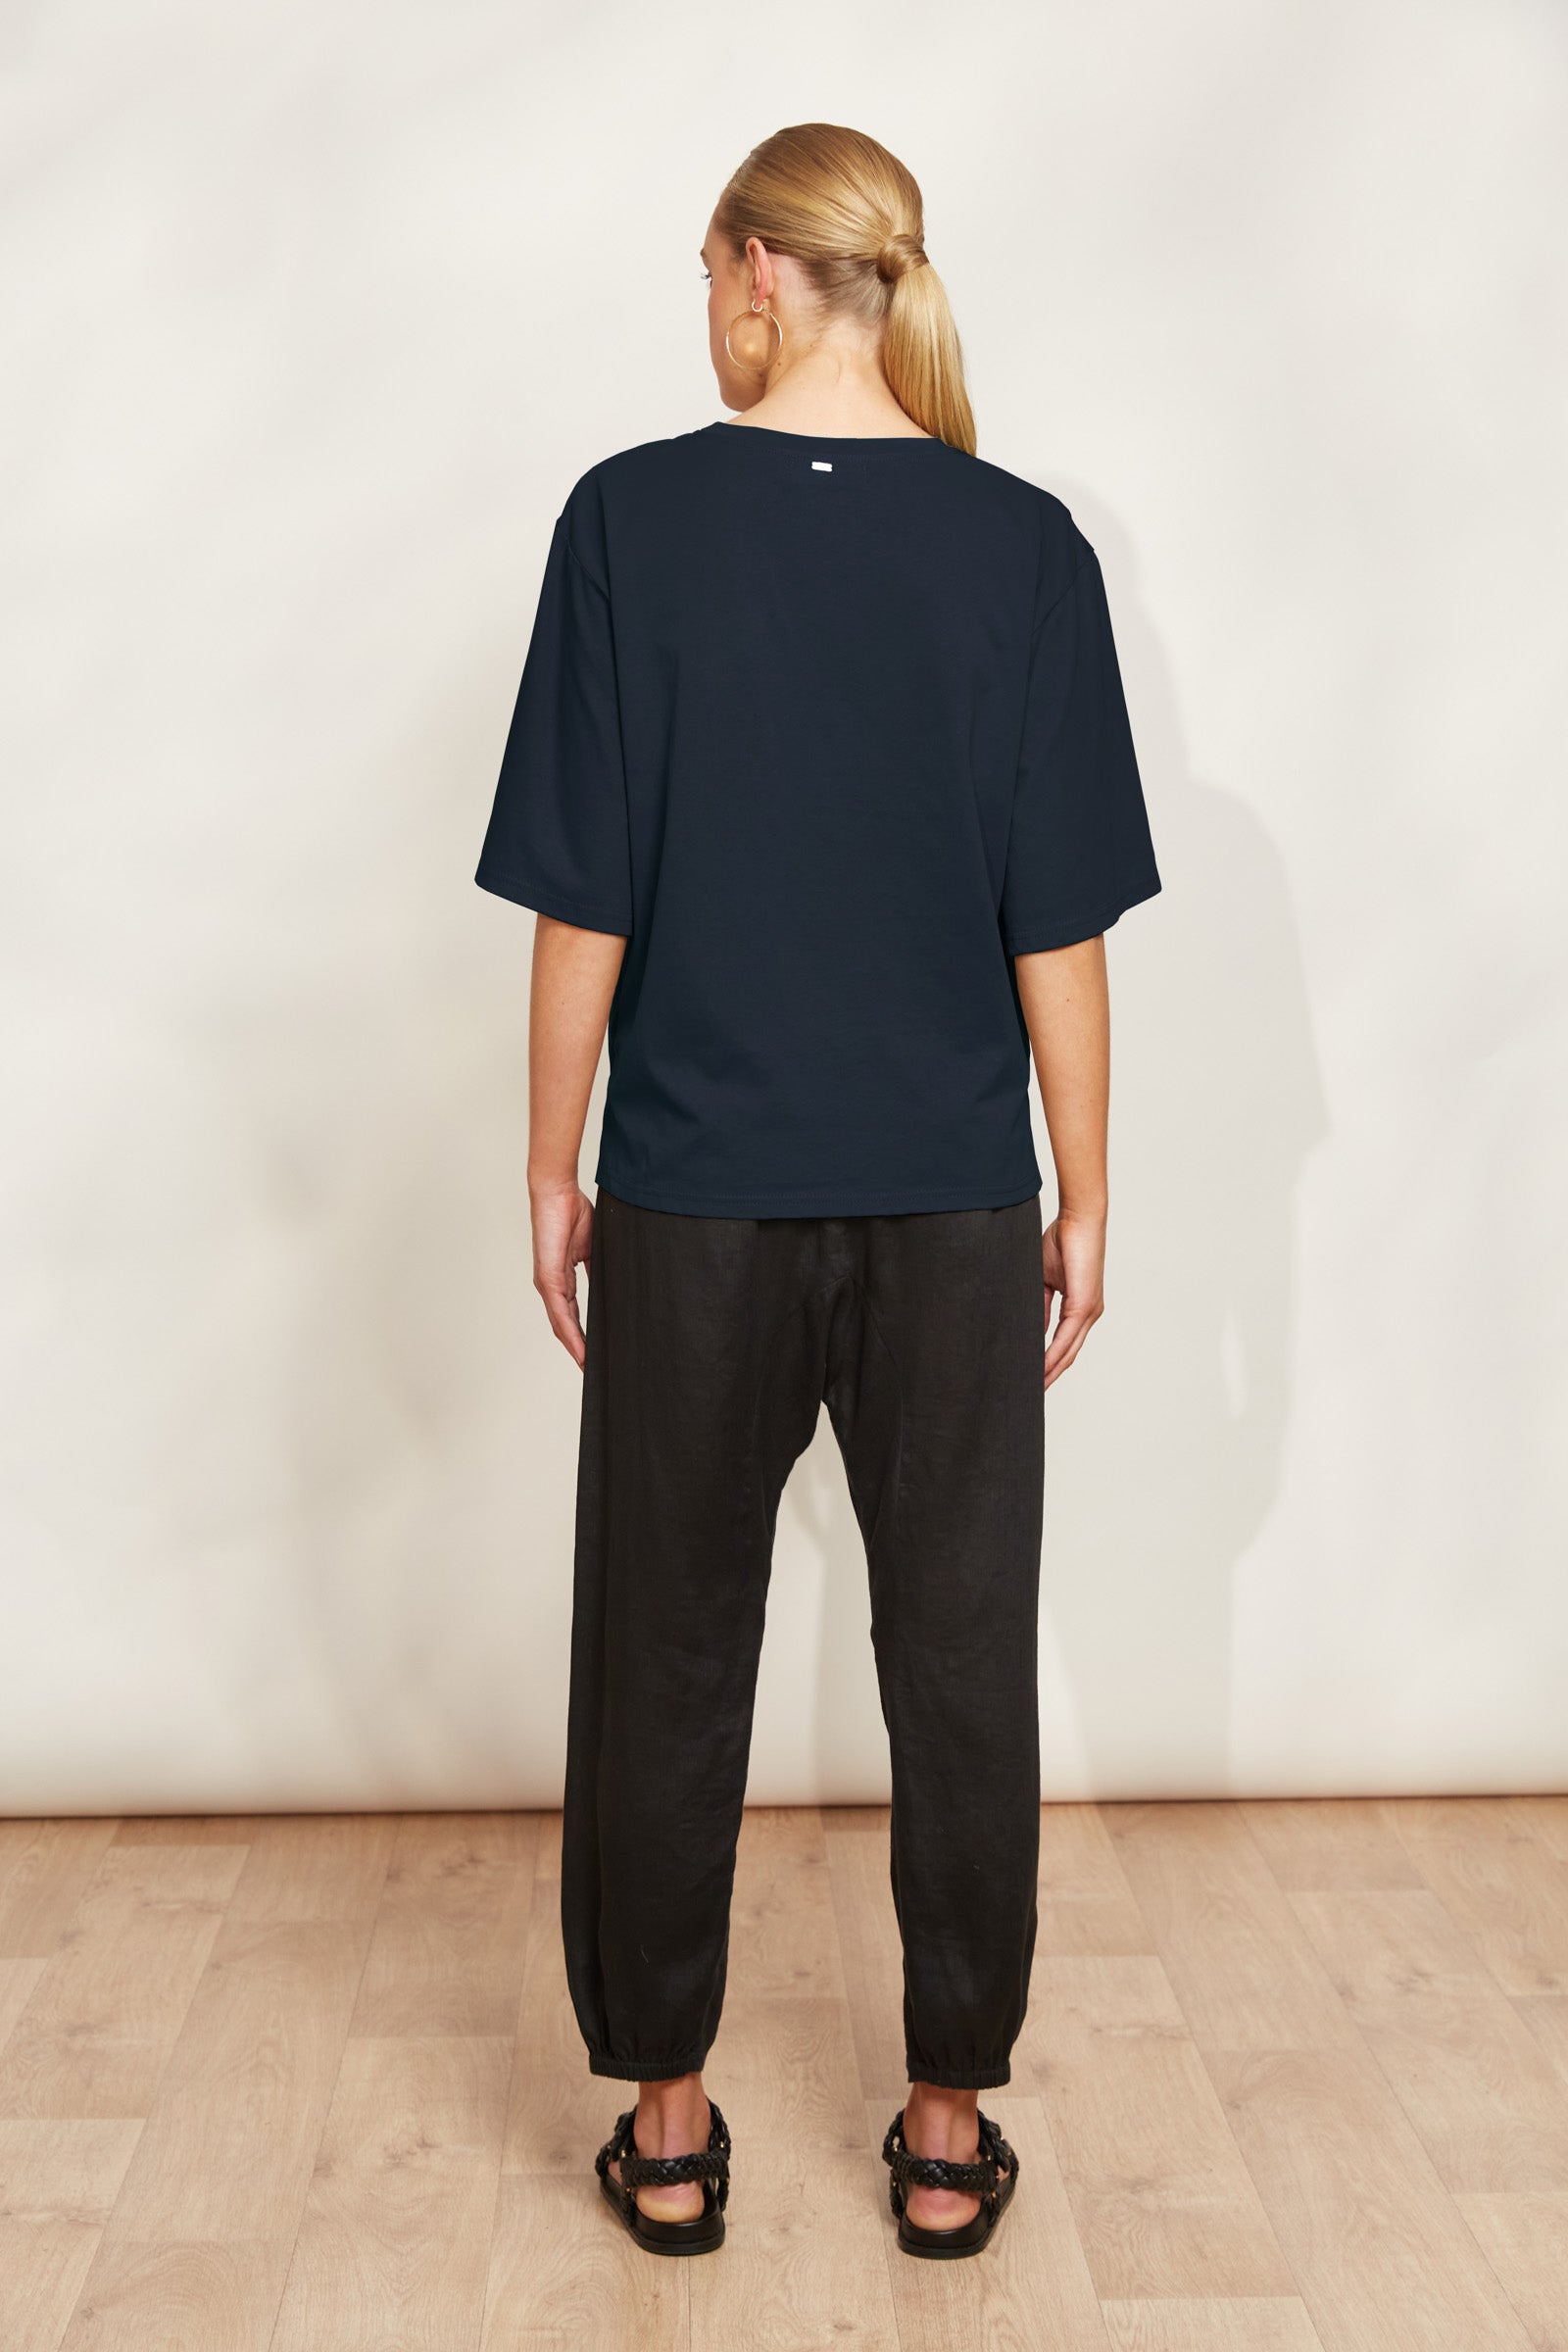 Studio Tshirt - Navy - eb&ive Clothing - Top Tshirt S/S